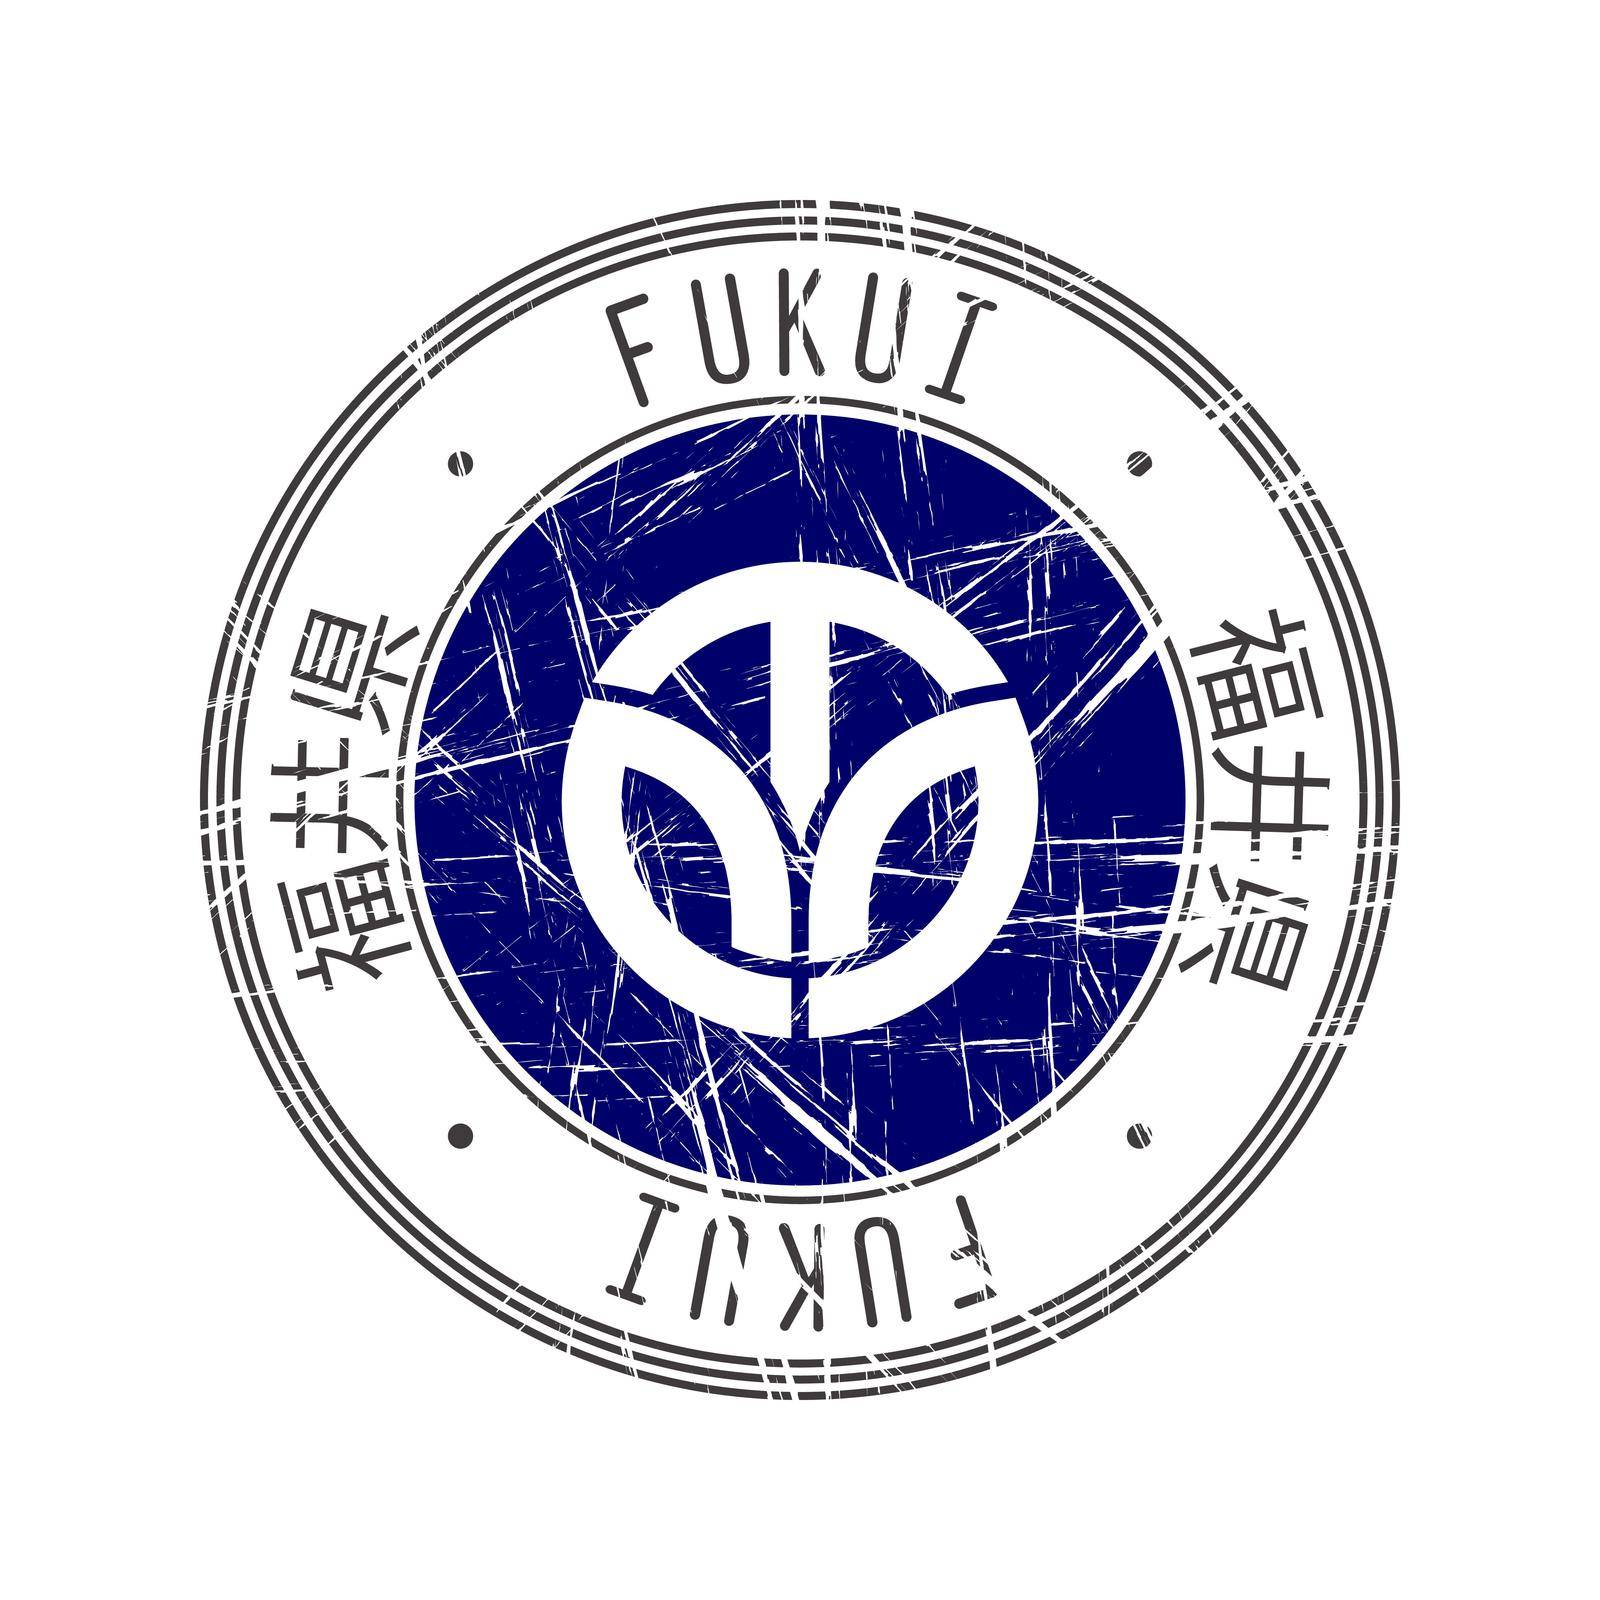 Fukui Prefecture rubber stamp by Lirch